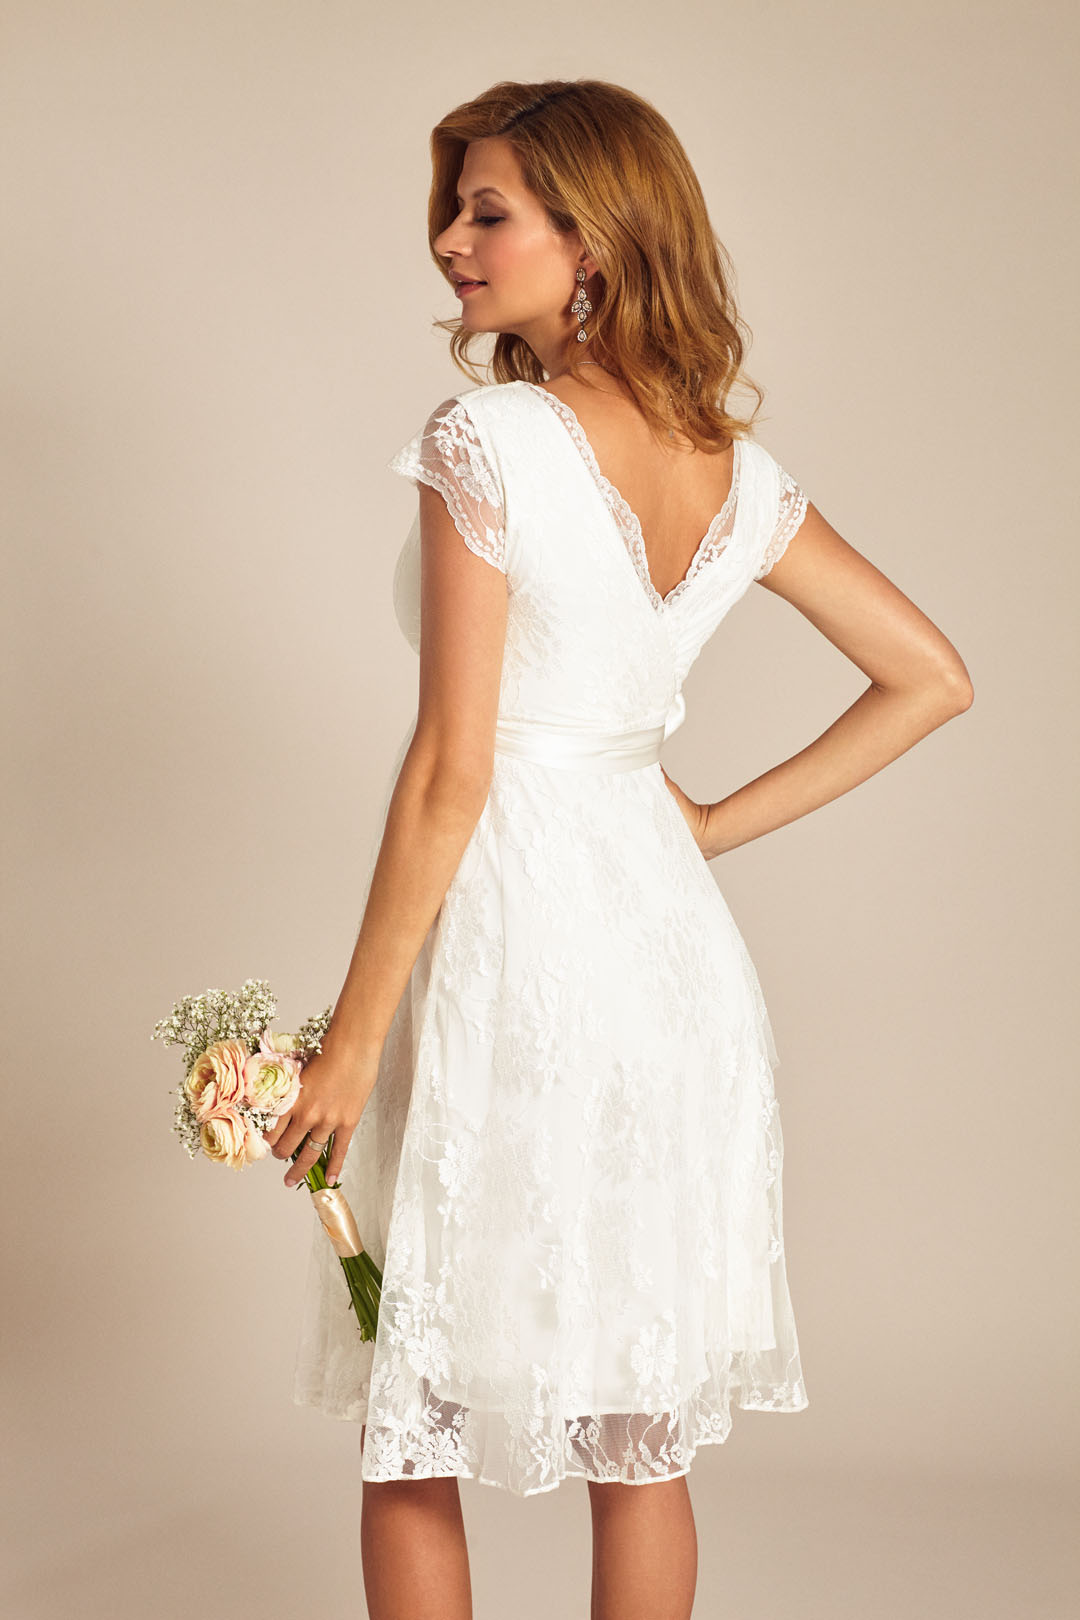 Heiraten mit Babybauch im Hochzeitskleid für Schwangere von Tiffany Rose: Modell Verona